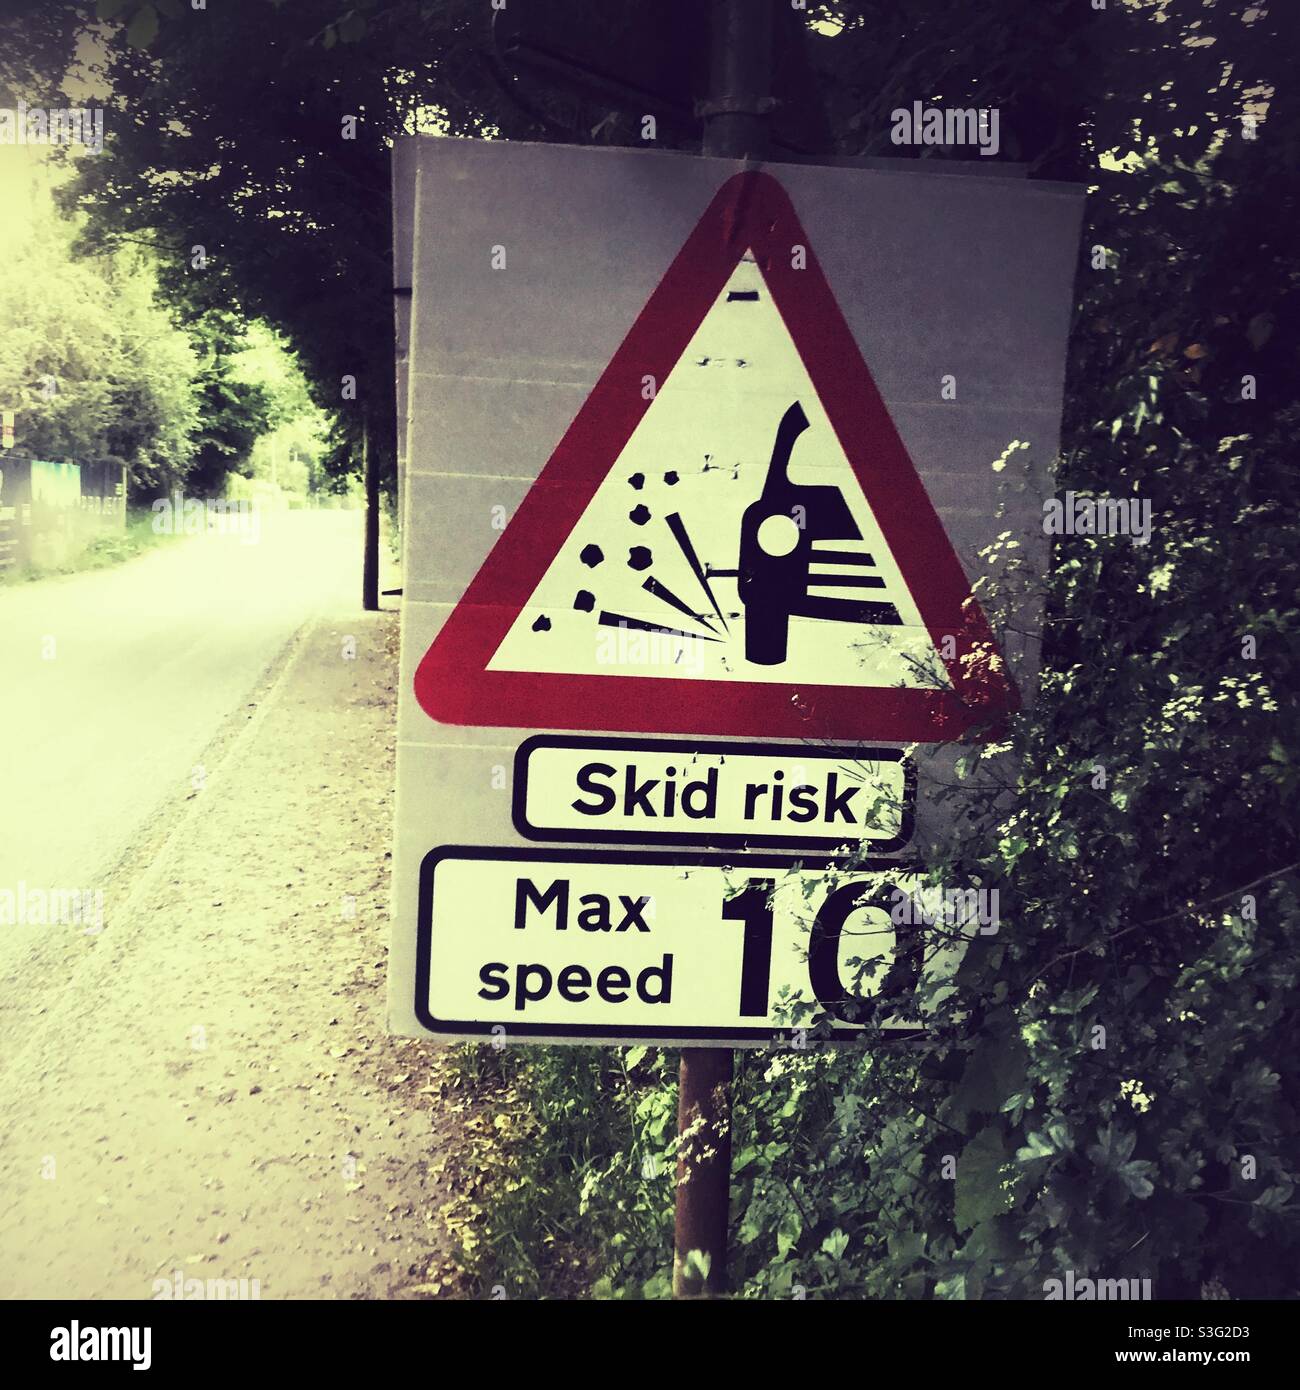 Skid risk hazard warning sign, Hampshire, England, United Kingdom. Stock Photo